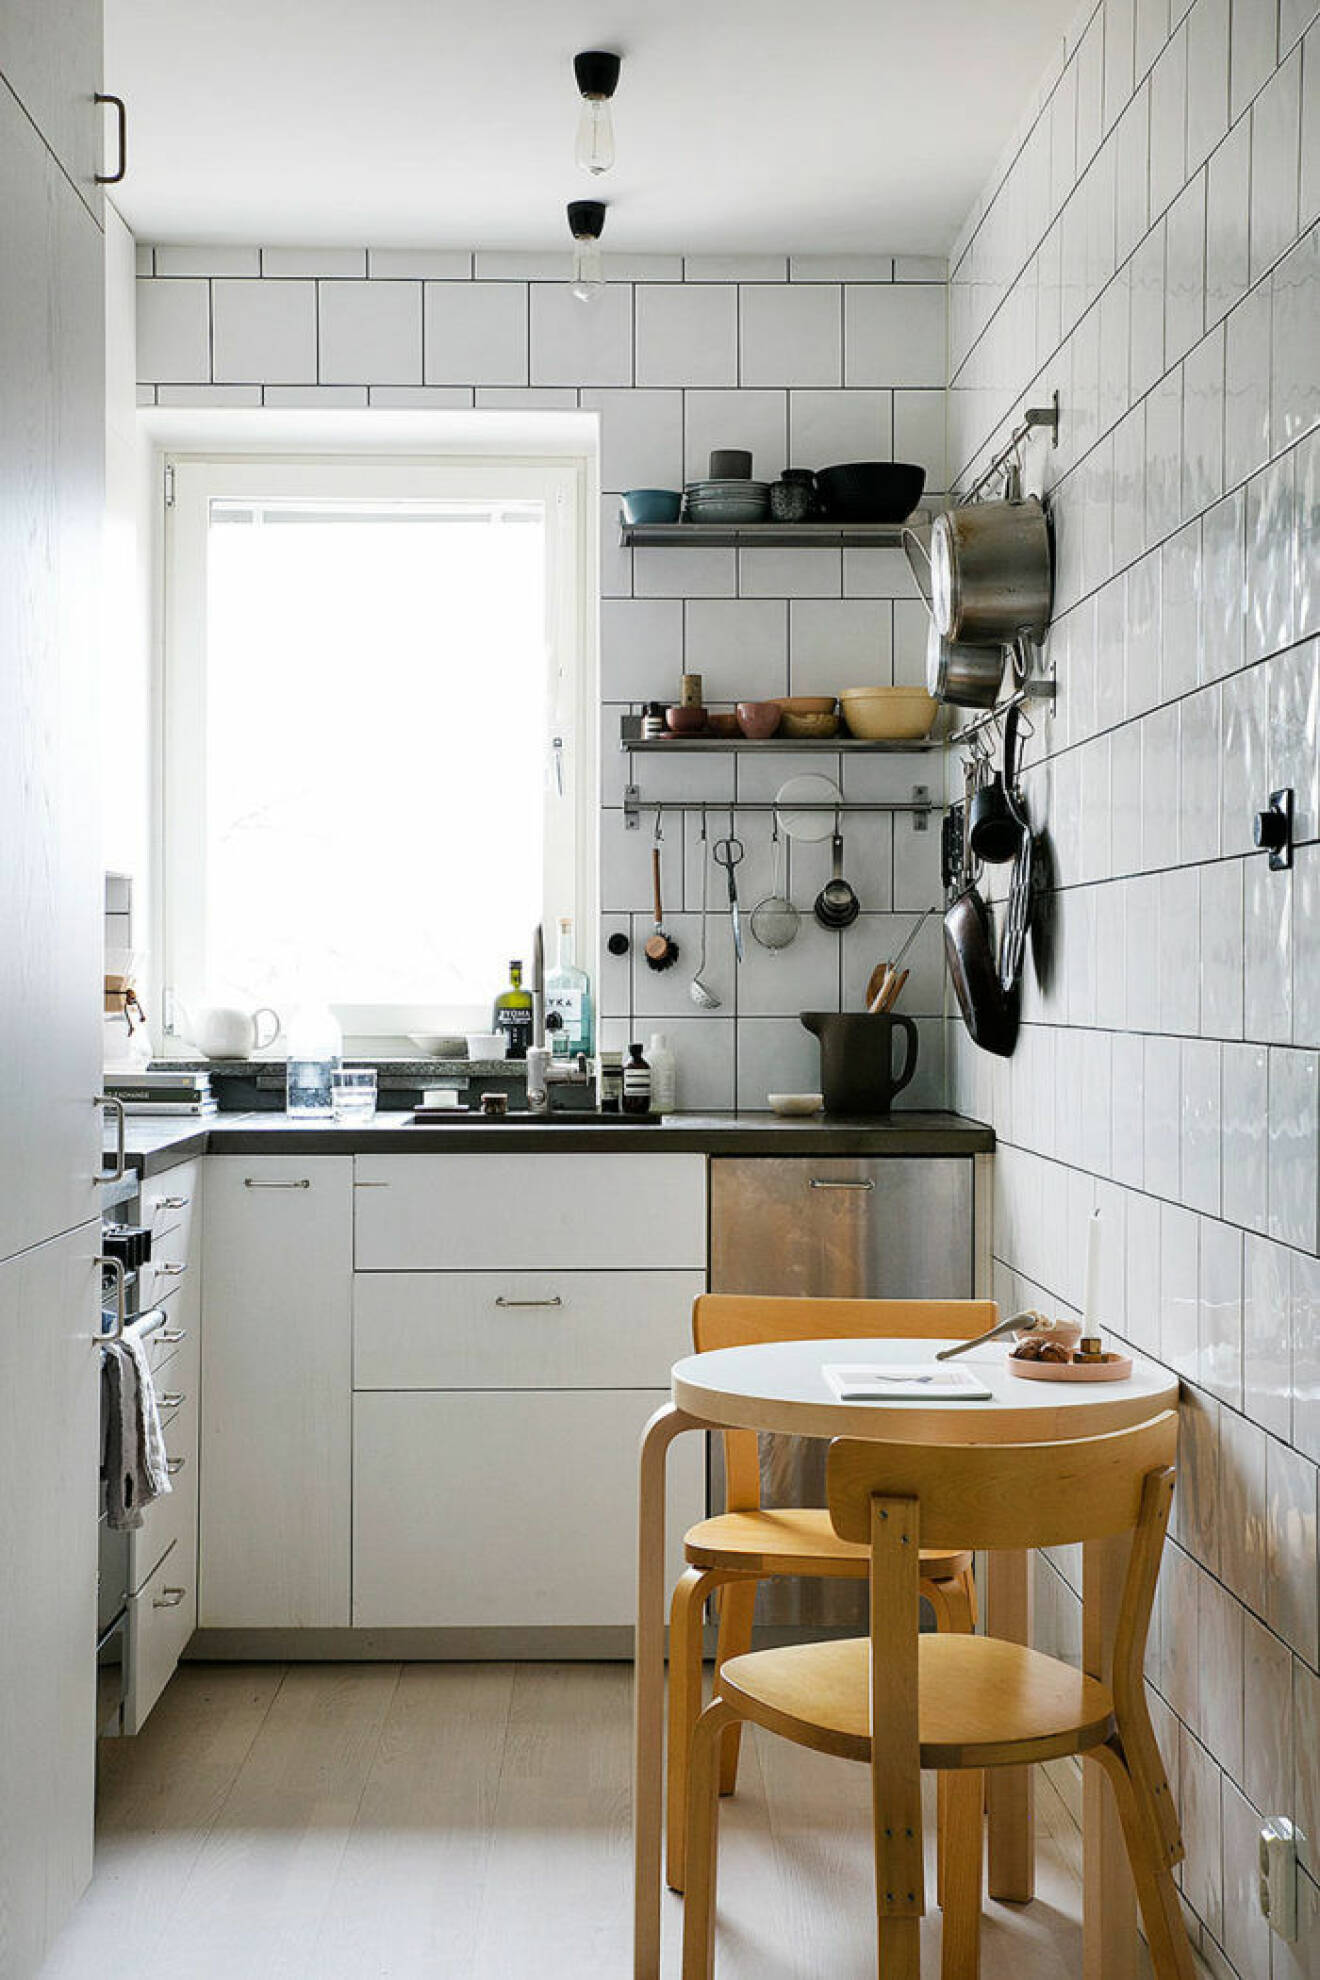 Compact living kök med öppen förvaring